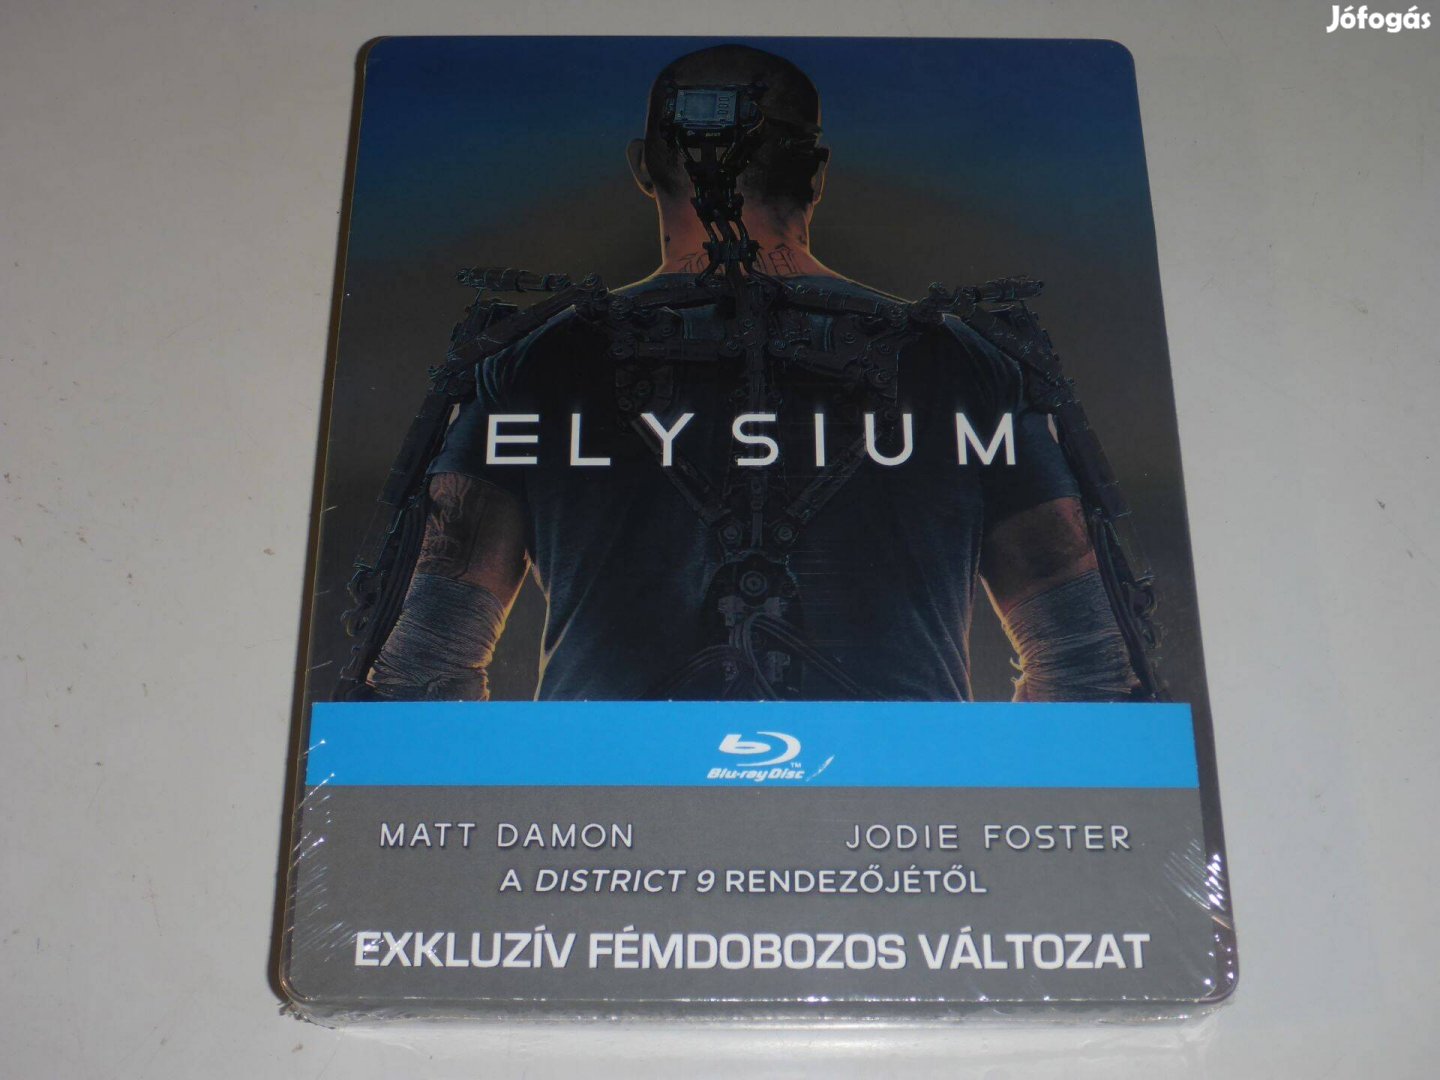 Elysium - Zárt világ - limitált fémdobozos vált. (steelbook) blu-ray